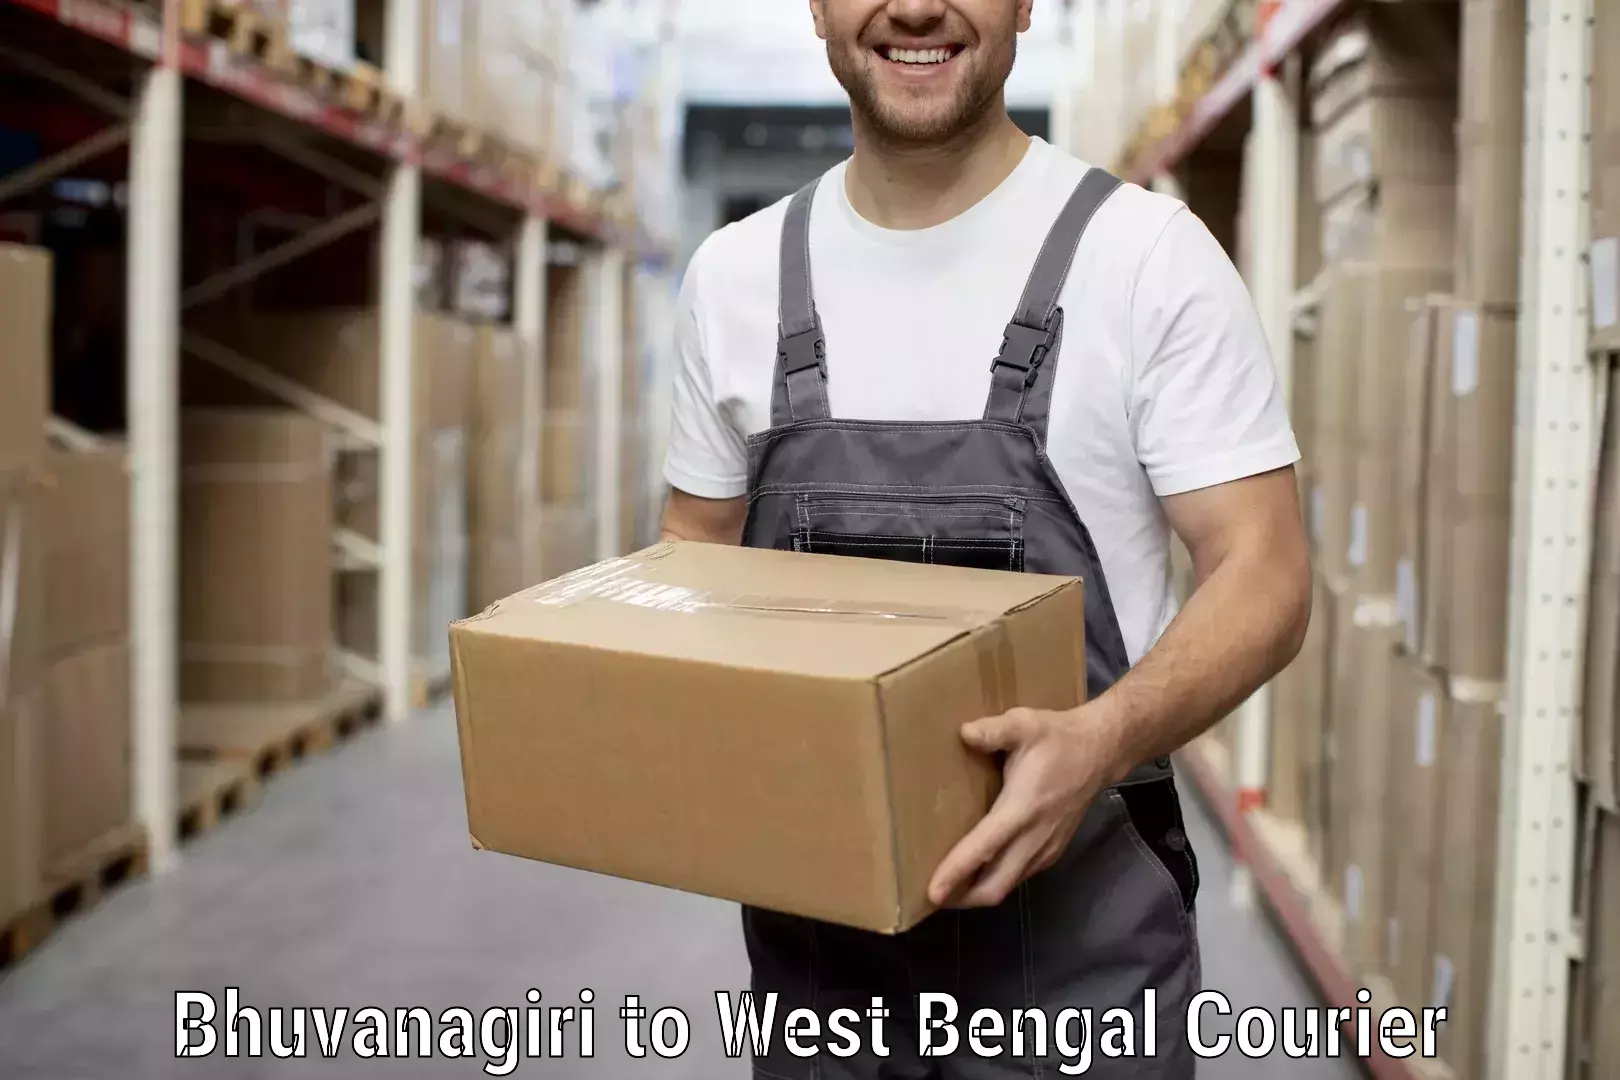 Furniture transport company Bhuvanagiri to West Bengal